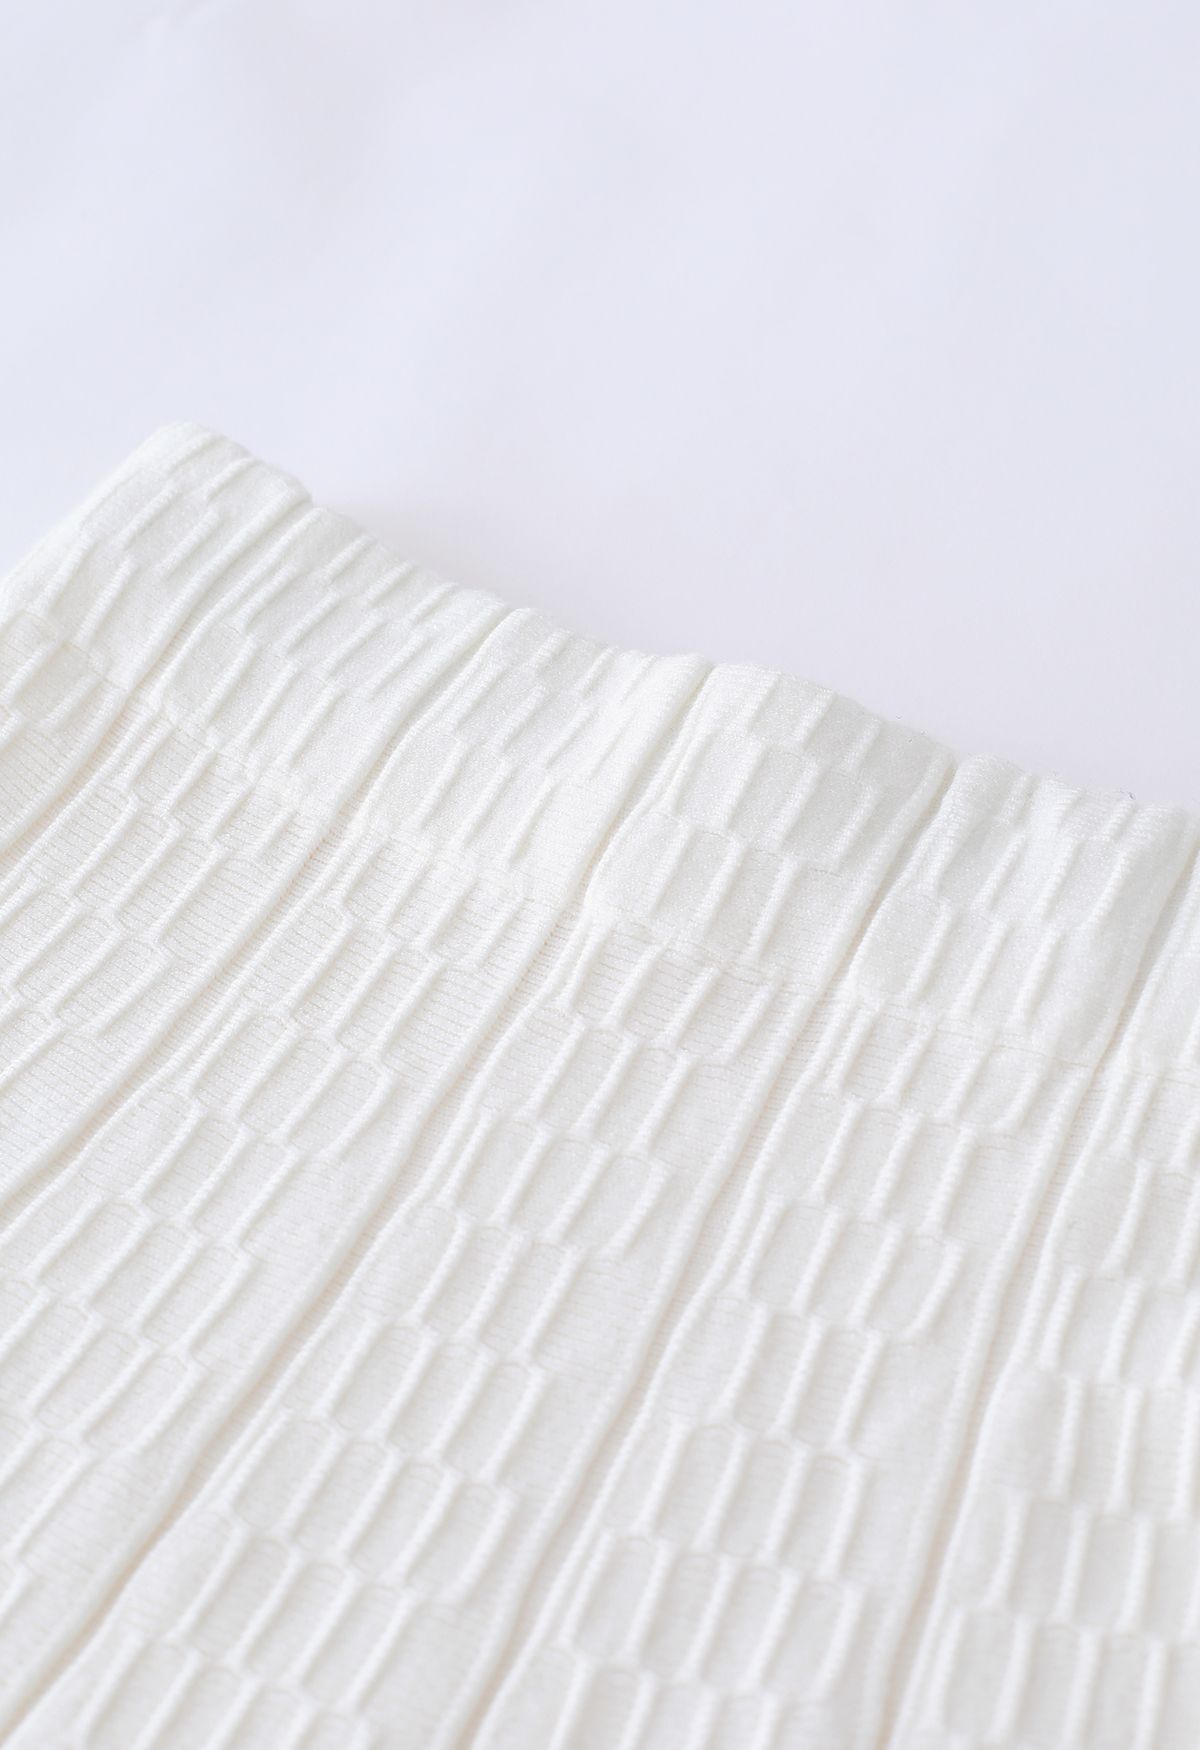 Rüschenrock aus weichem Strick mit geprägter Struktur in Weiß